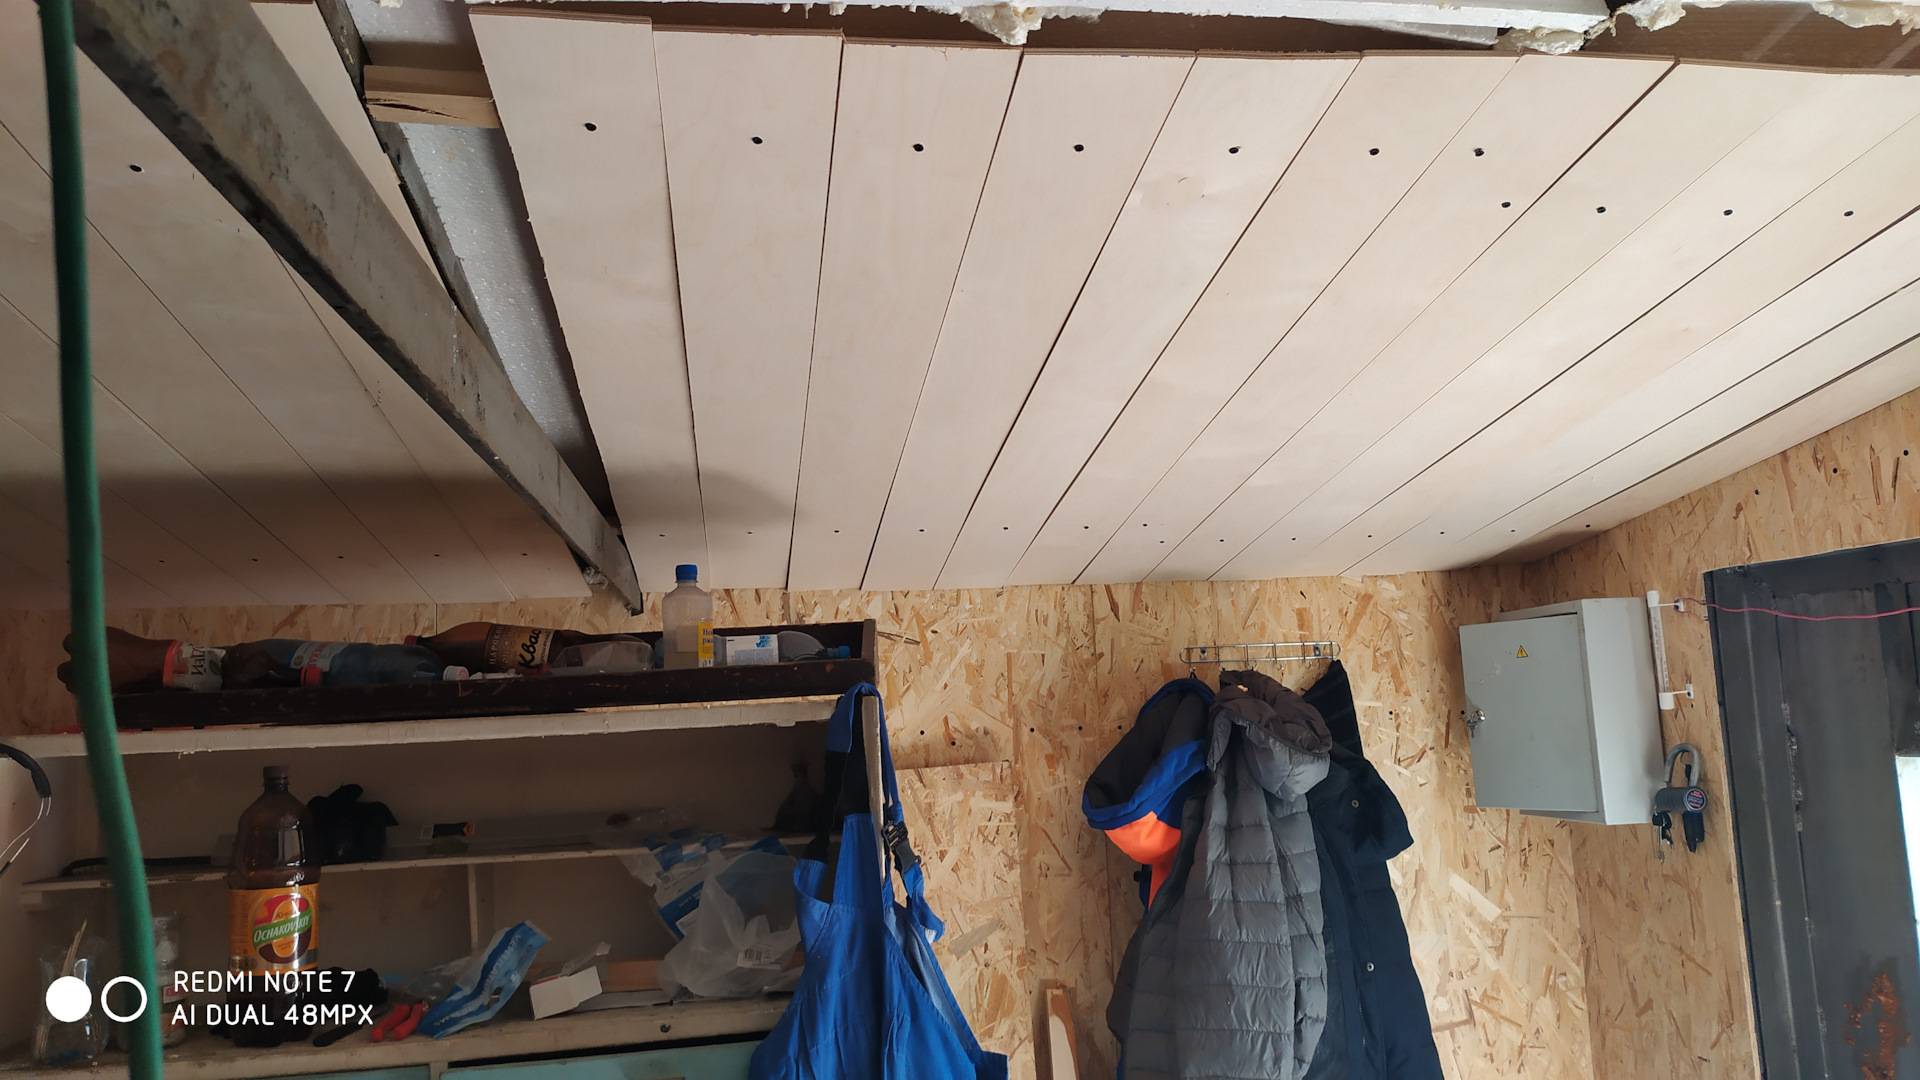 Потолок в гараже: какими материалами его отделывают